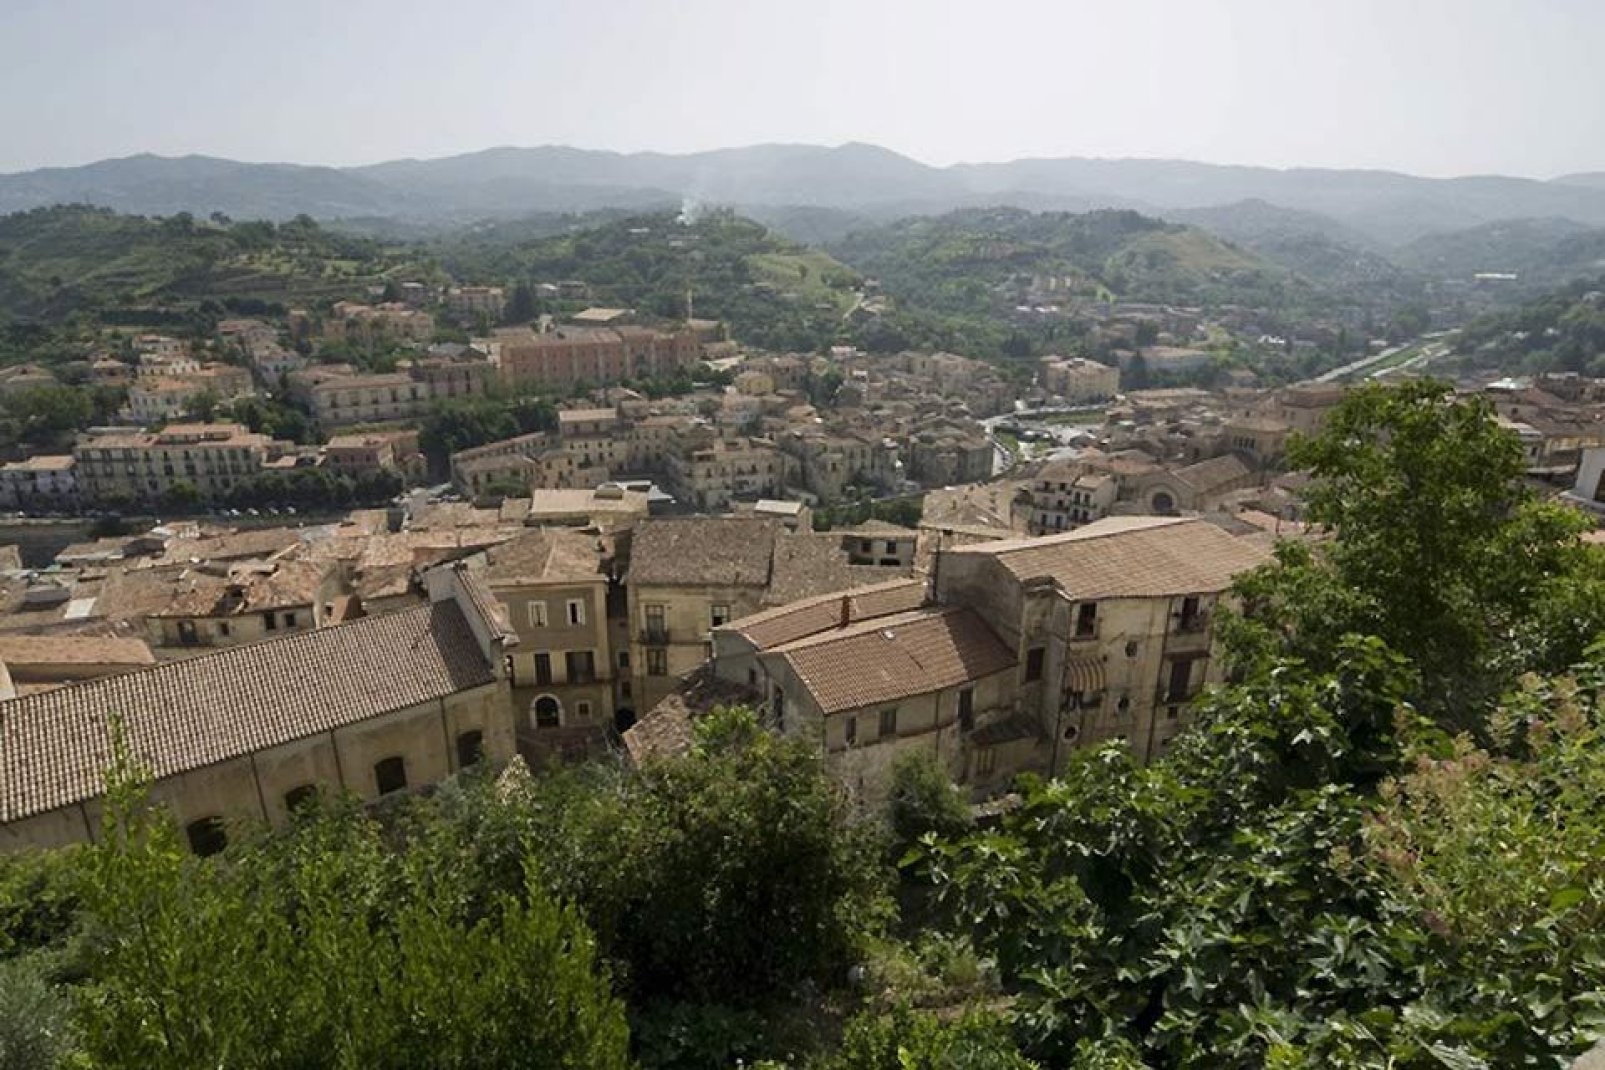 Cosenza se erige en el valle del río Crati, sobre siete colinas; el centro de su casco antiguo conserva su aspecto medieval.